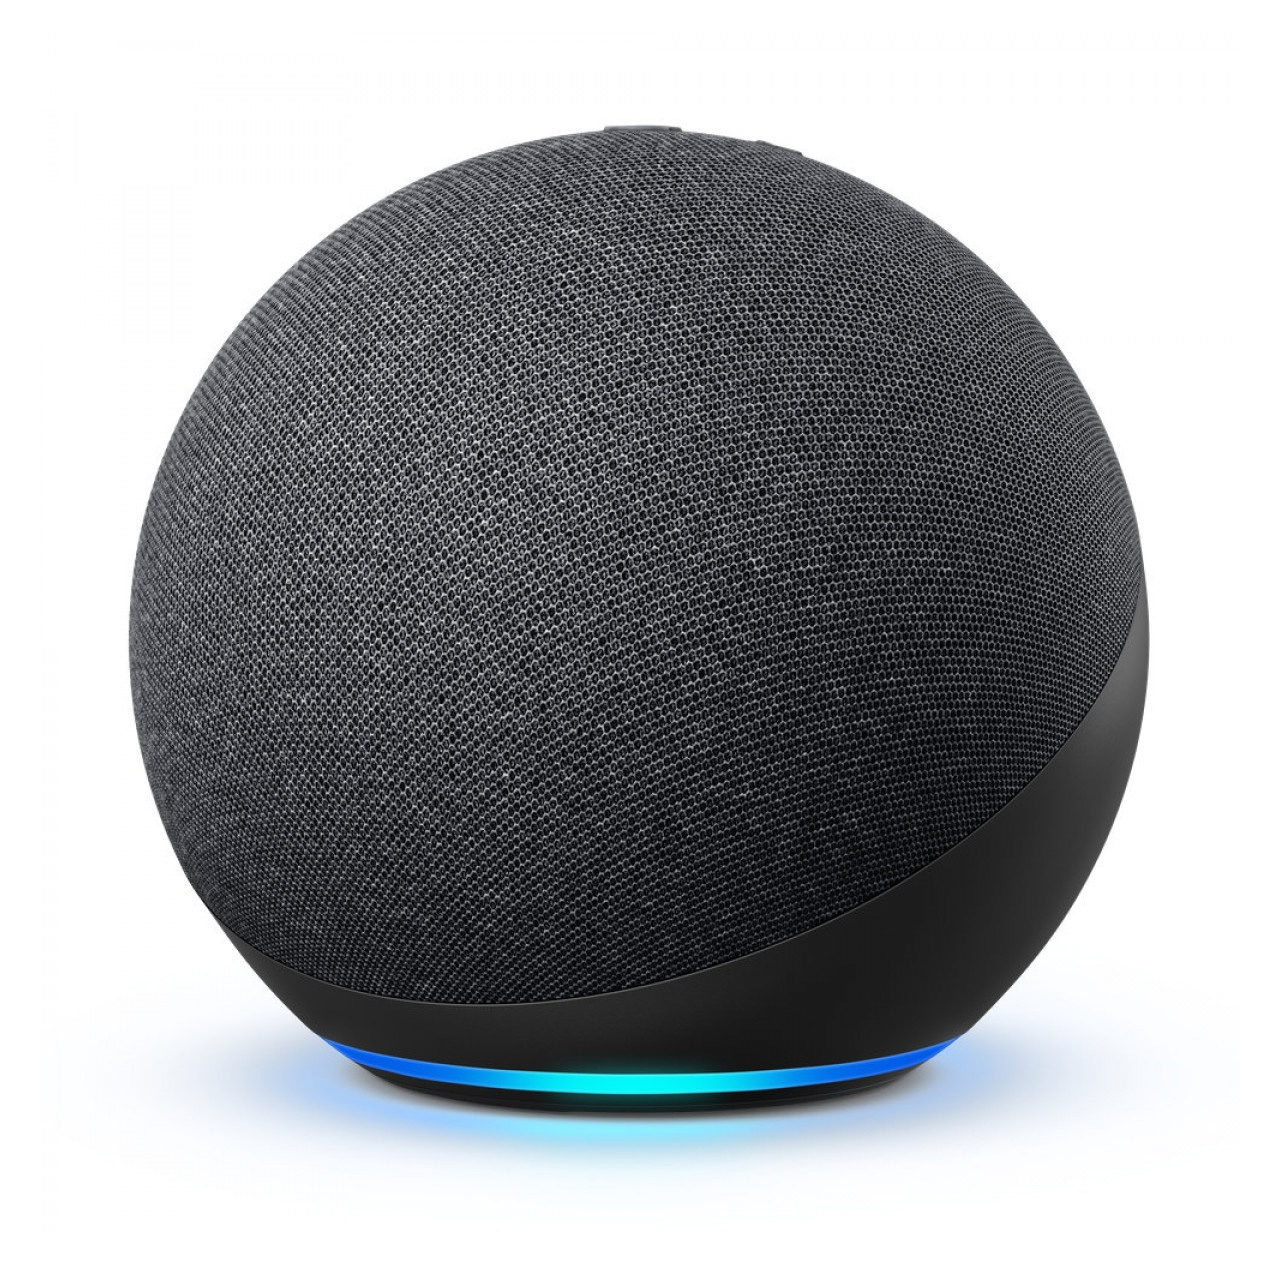 Amazon обновила умные колонки Echo и выпустила Echo Dot